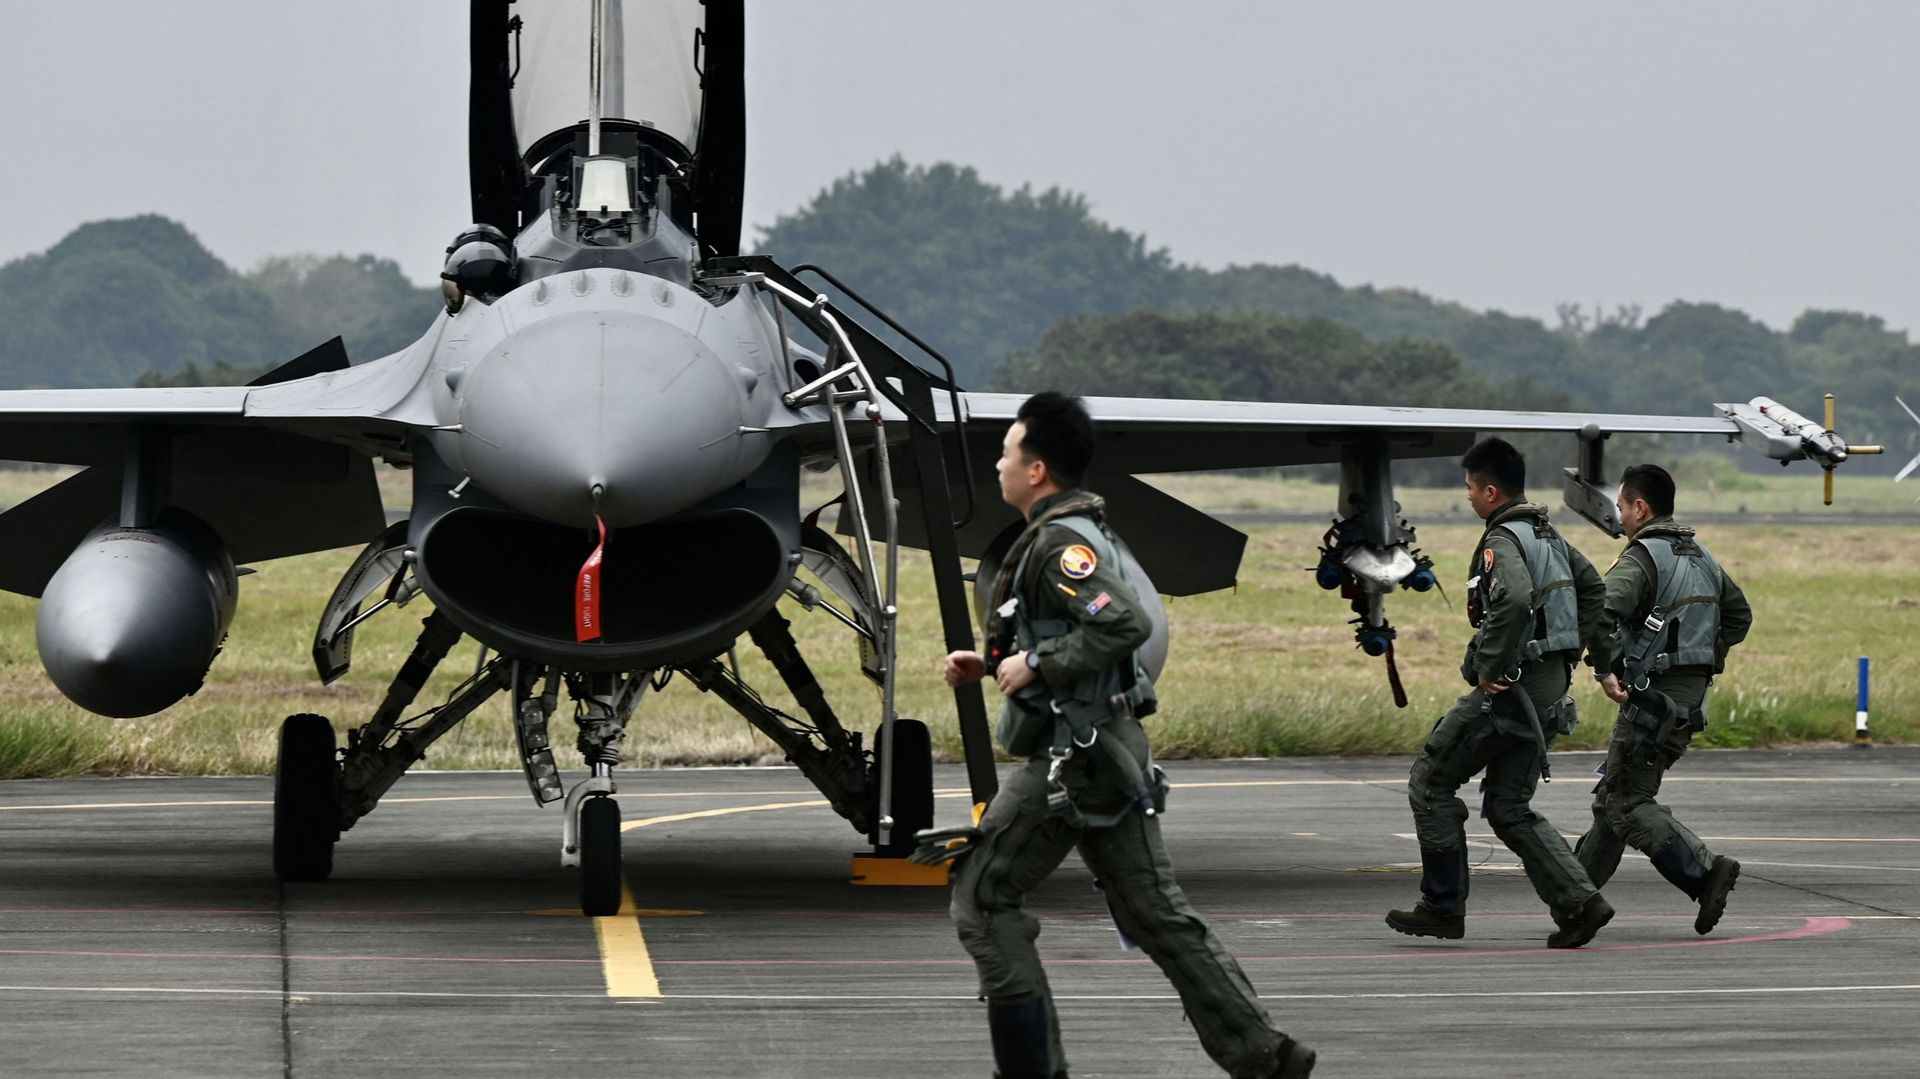 Des pilotes de l'armée de l'air taïwanaise passent devant un chasseur F-16V armé de fabrication américaine sur une base aérienne à Chiayi, dans le sud de Taïwan, le 5 janvier 2022.